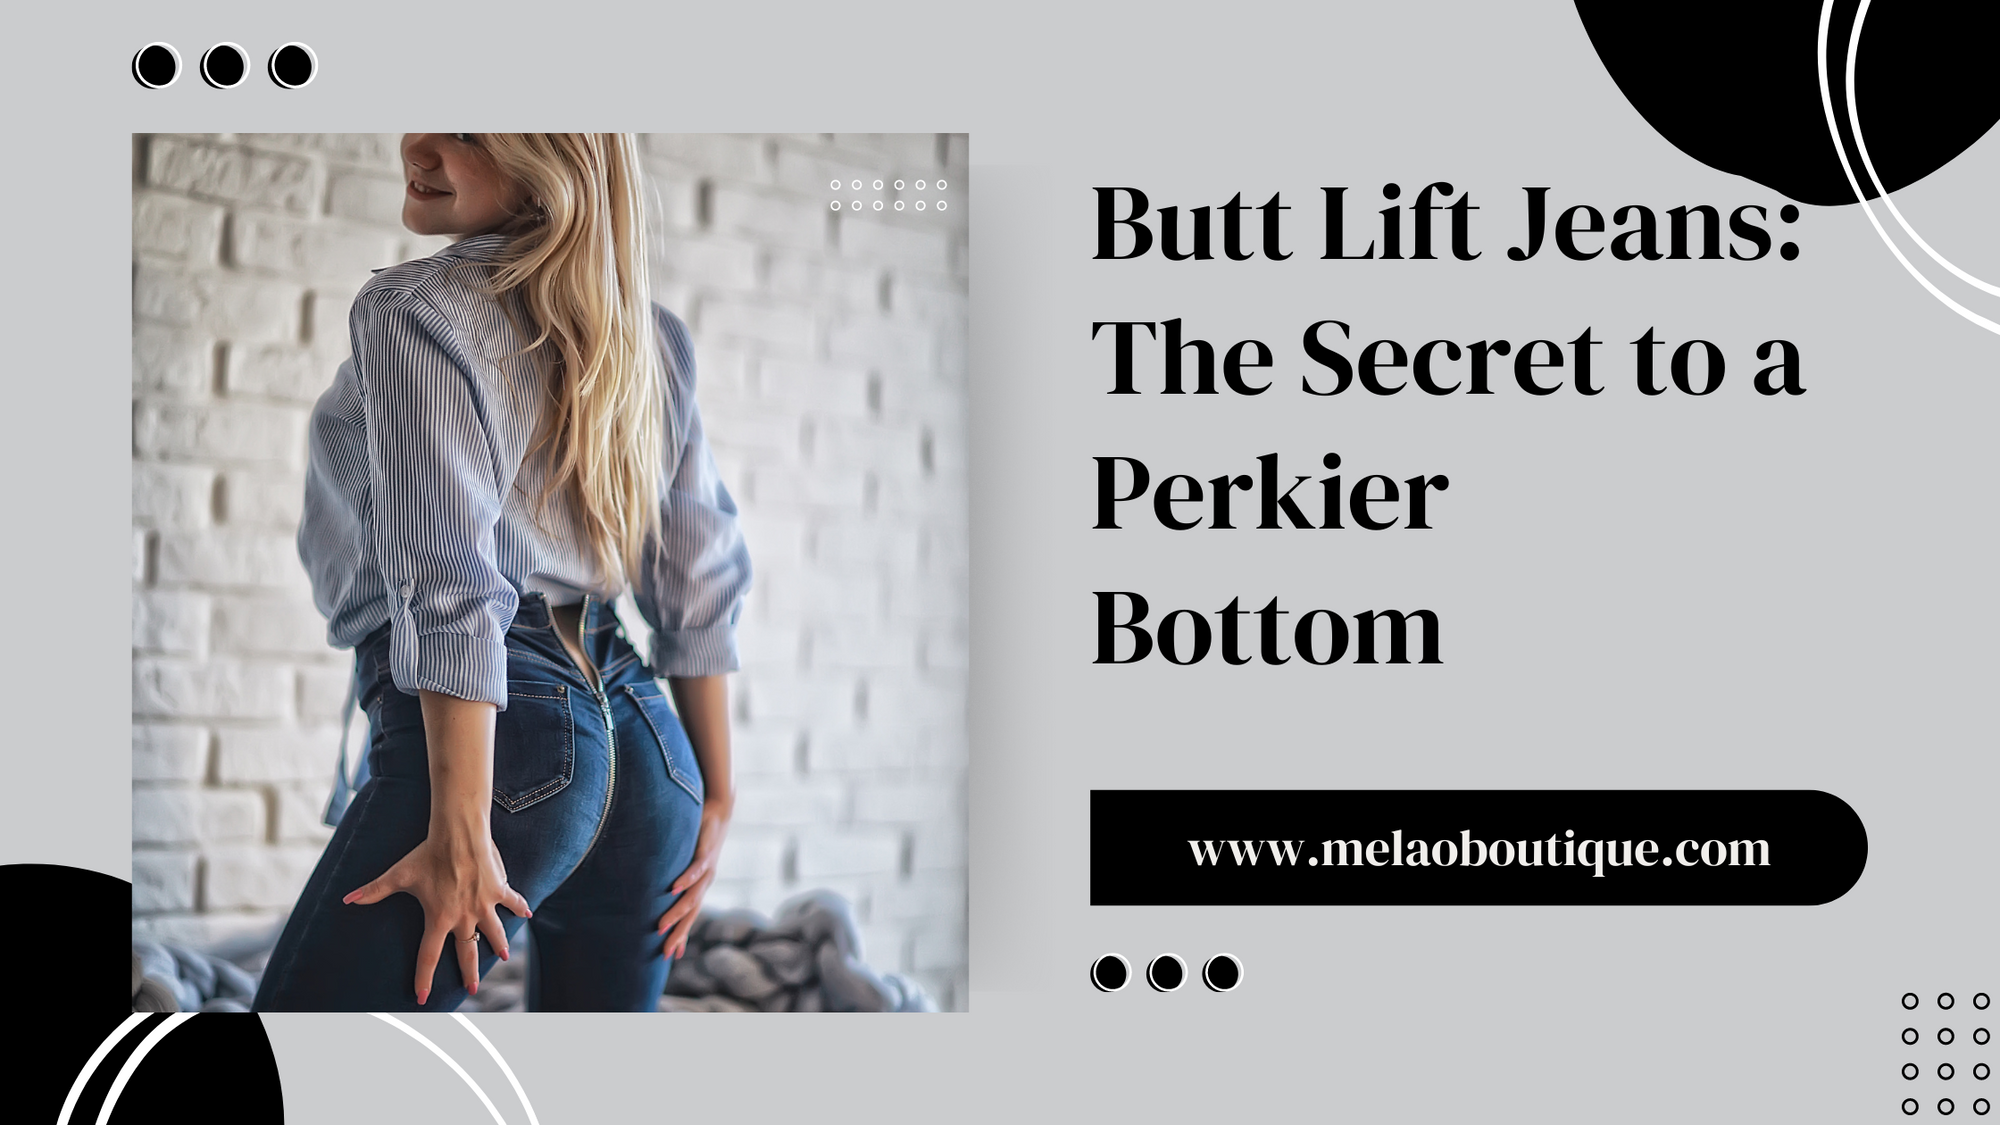 Butt Lift Jeans: The Secret to a Perkier Bottom